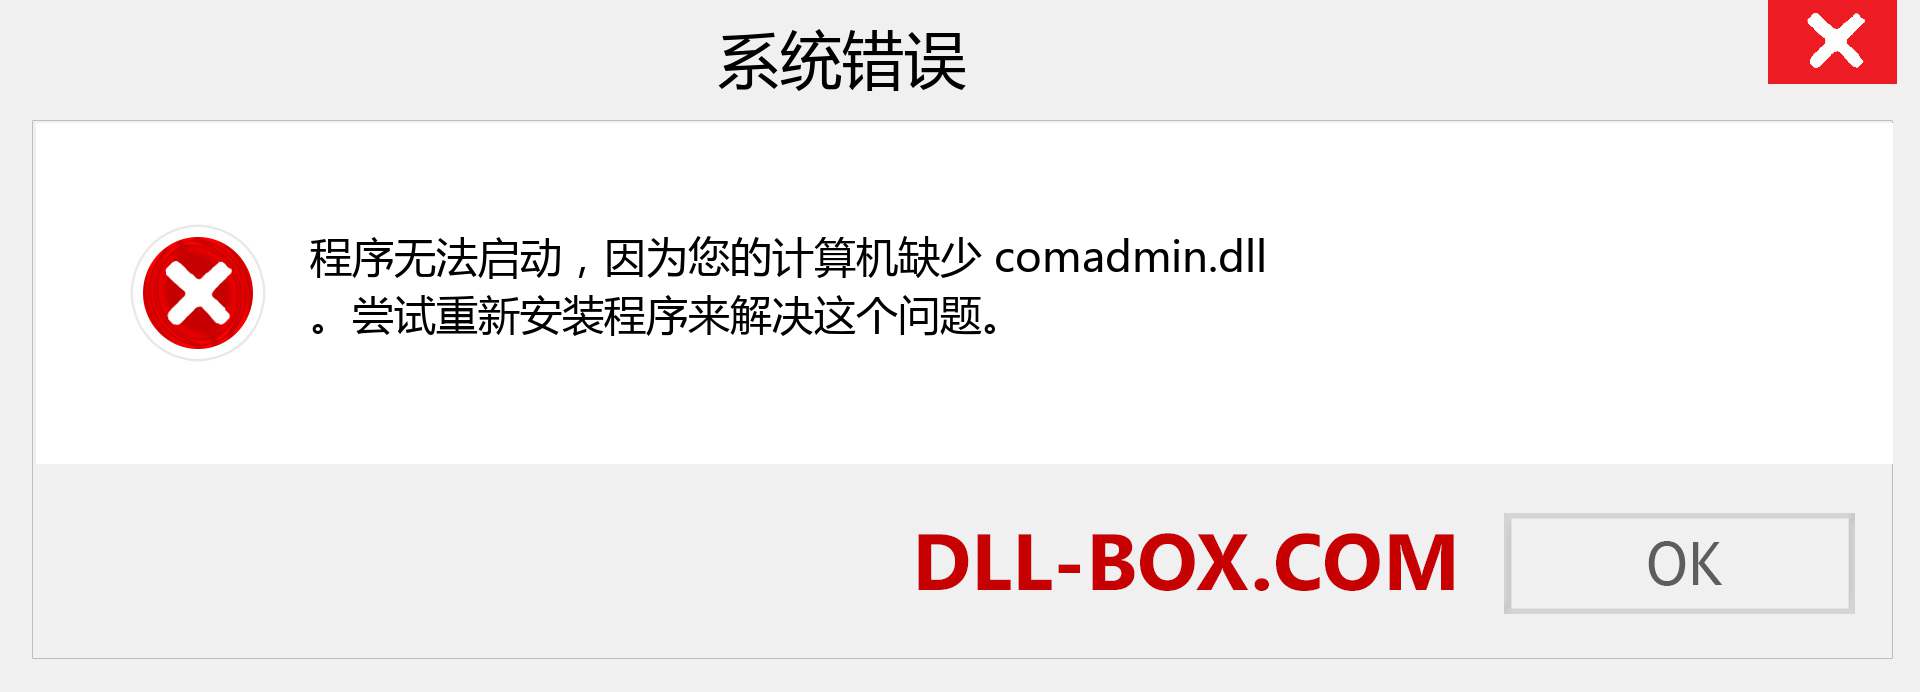 comadmin.dll 文件丢失？。 适用于 Windows 7、8、10 的下载 - 修复 Windows、照片、图像上的 comadmin dll 丢失错误